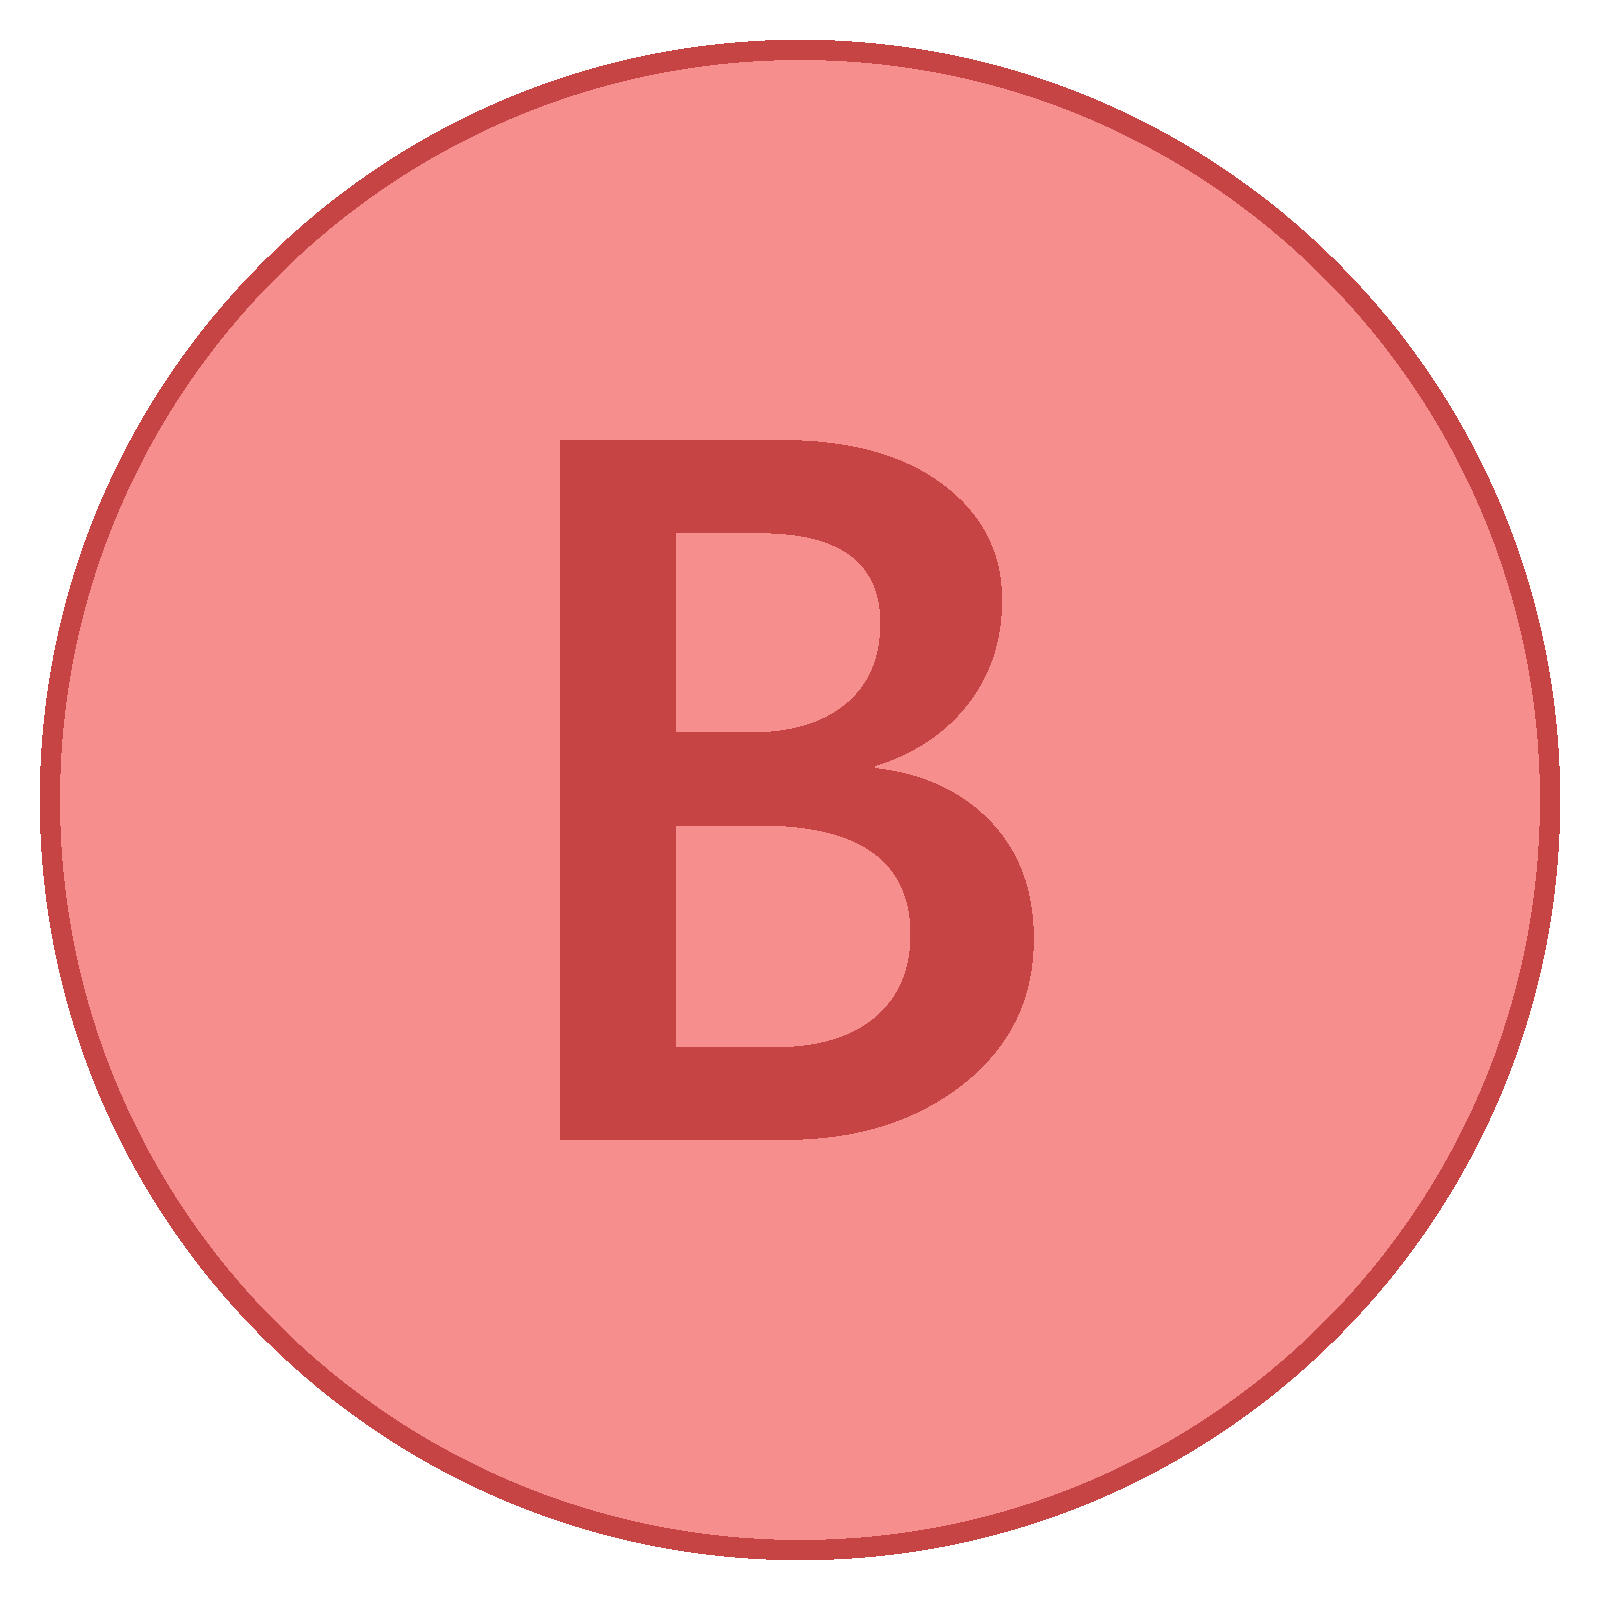 B in Circle Logo - Xbox B Icono gratuita, PNG y vector